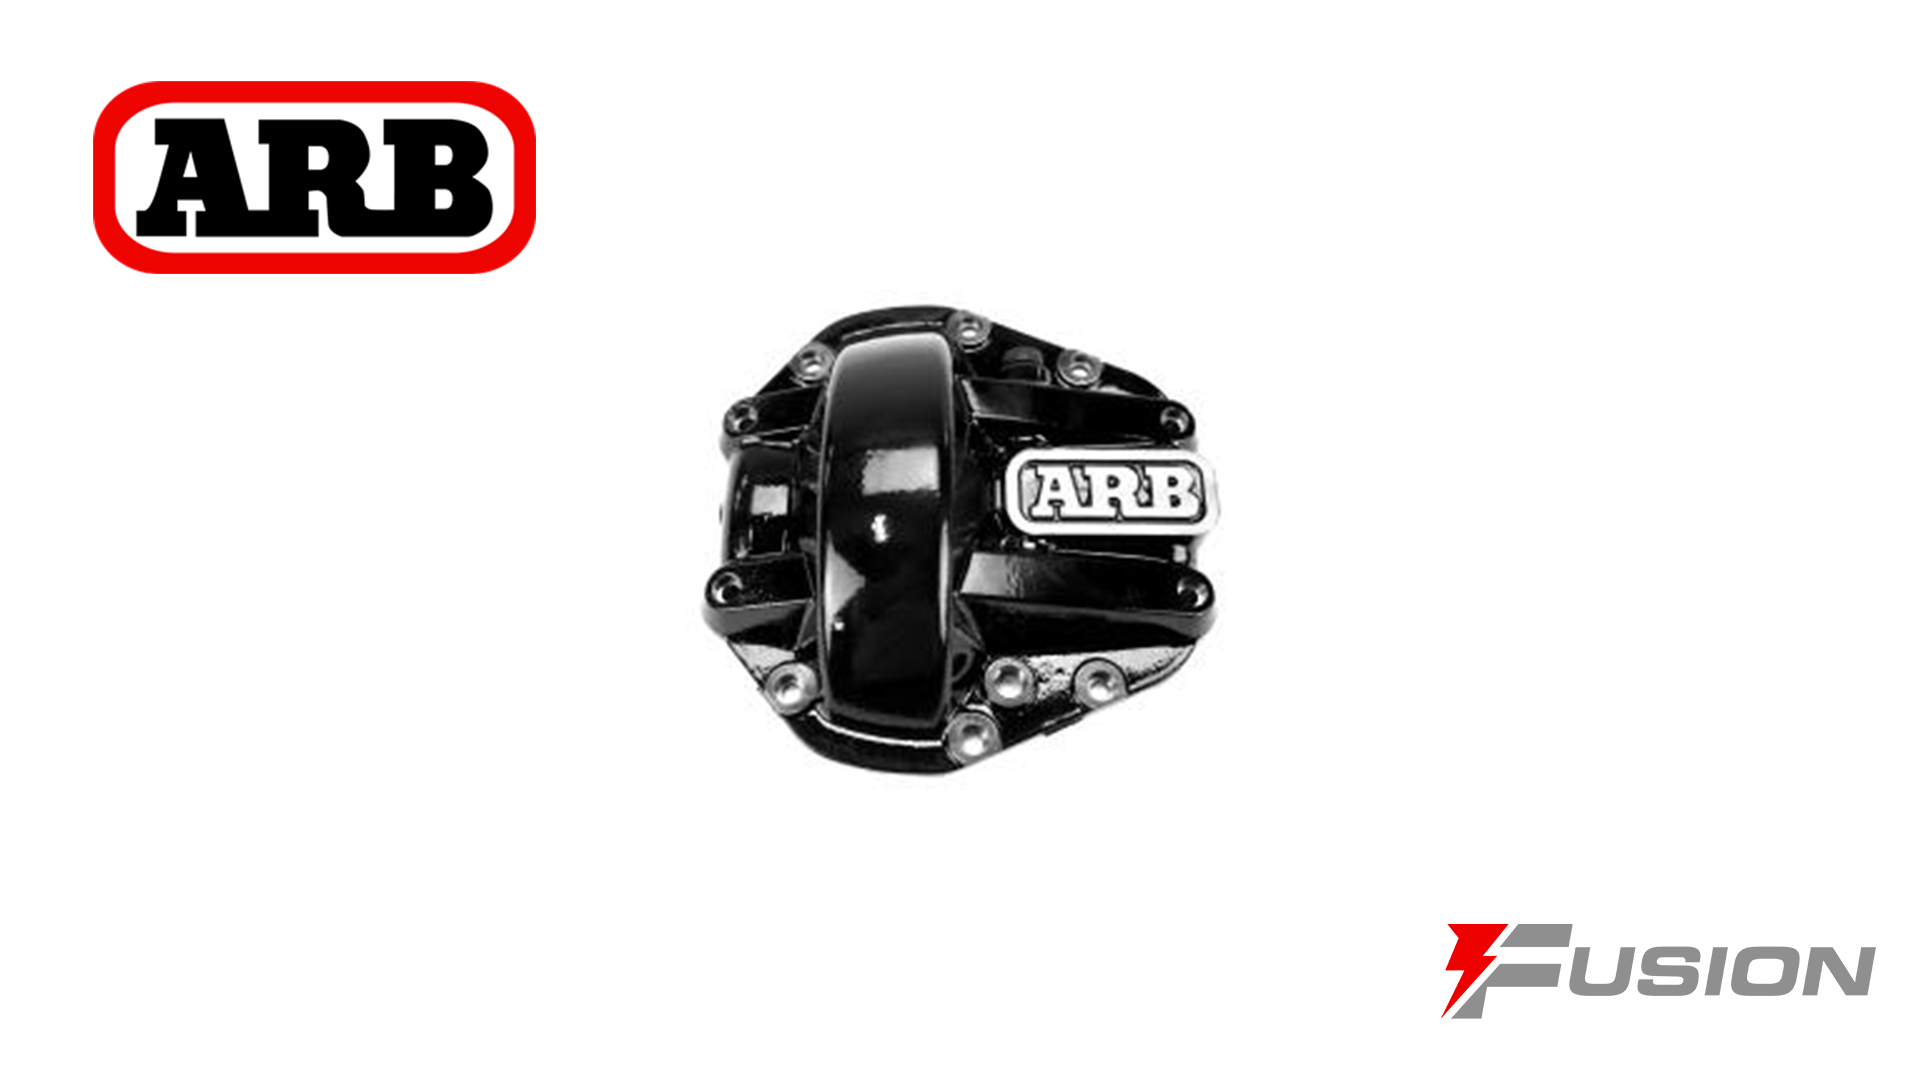 Dana 60/70 Diff Cover - ARB Black - fusion4x4